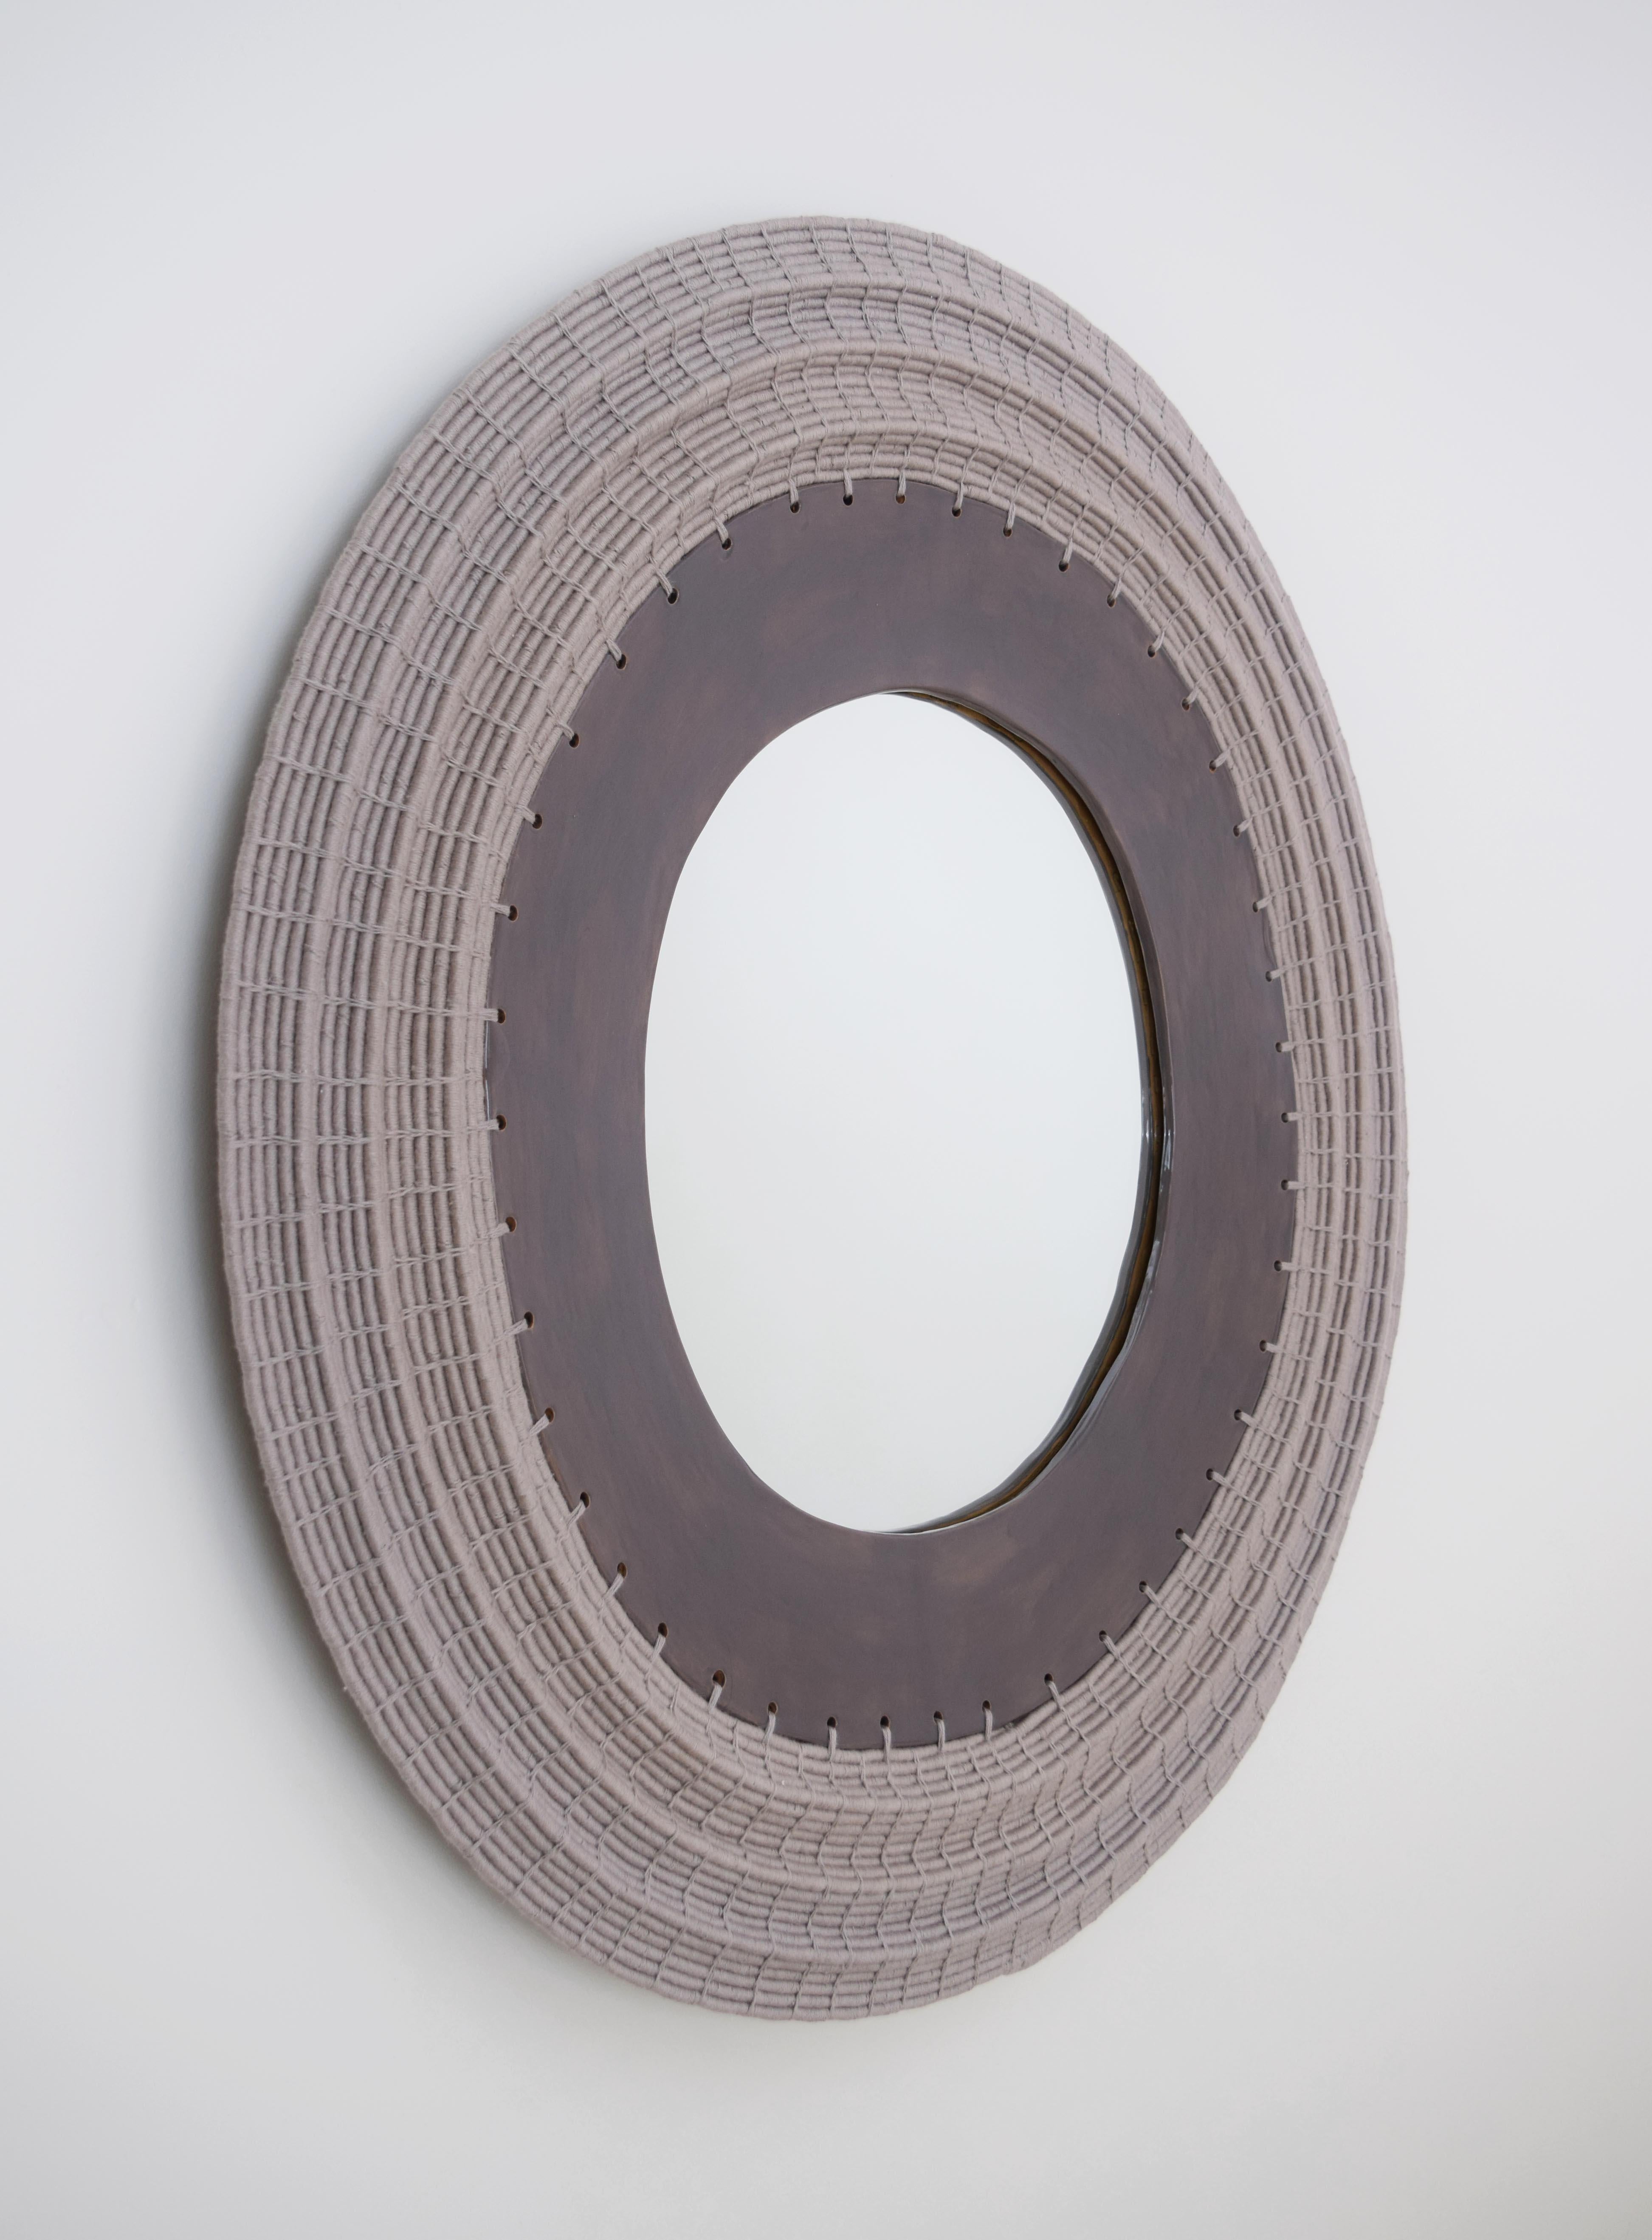 Dieser dekorative Spiegel wird auf Bestellung gefertigt und eignet sich perfekt zum Aufhängen in einem Eingangsbereich oder einer Nasszelle. Er hat einen gewebten Rahmen mit einem wellenförmigen, dimensionalen Effekt.

Handgeformter Rahmen aus